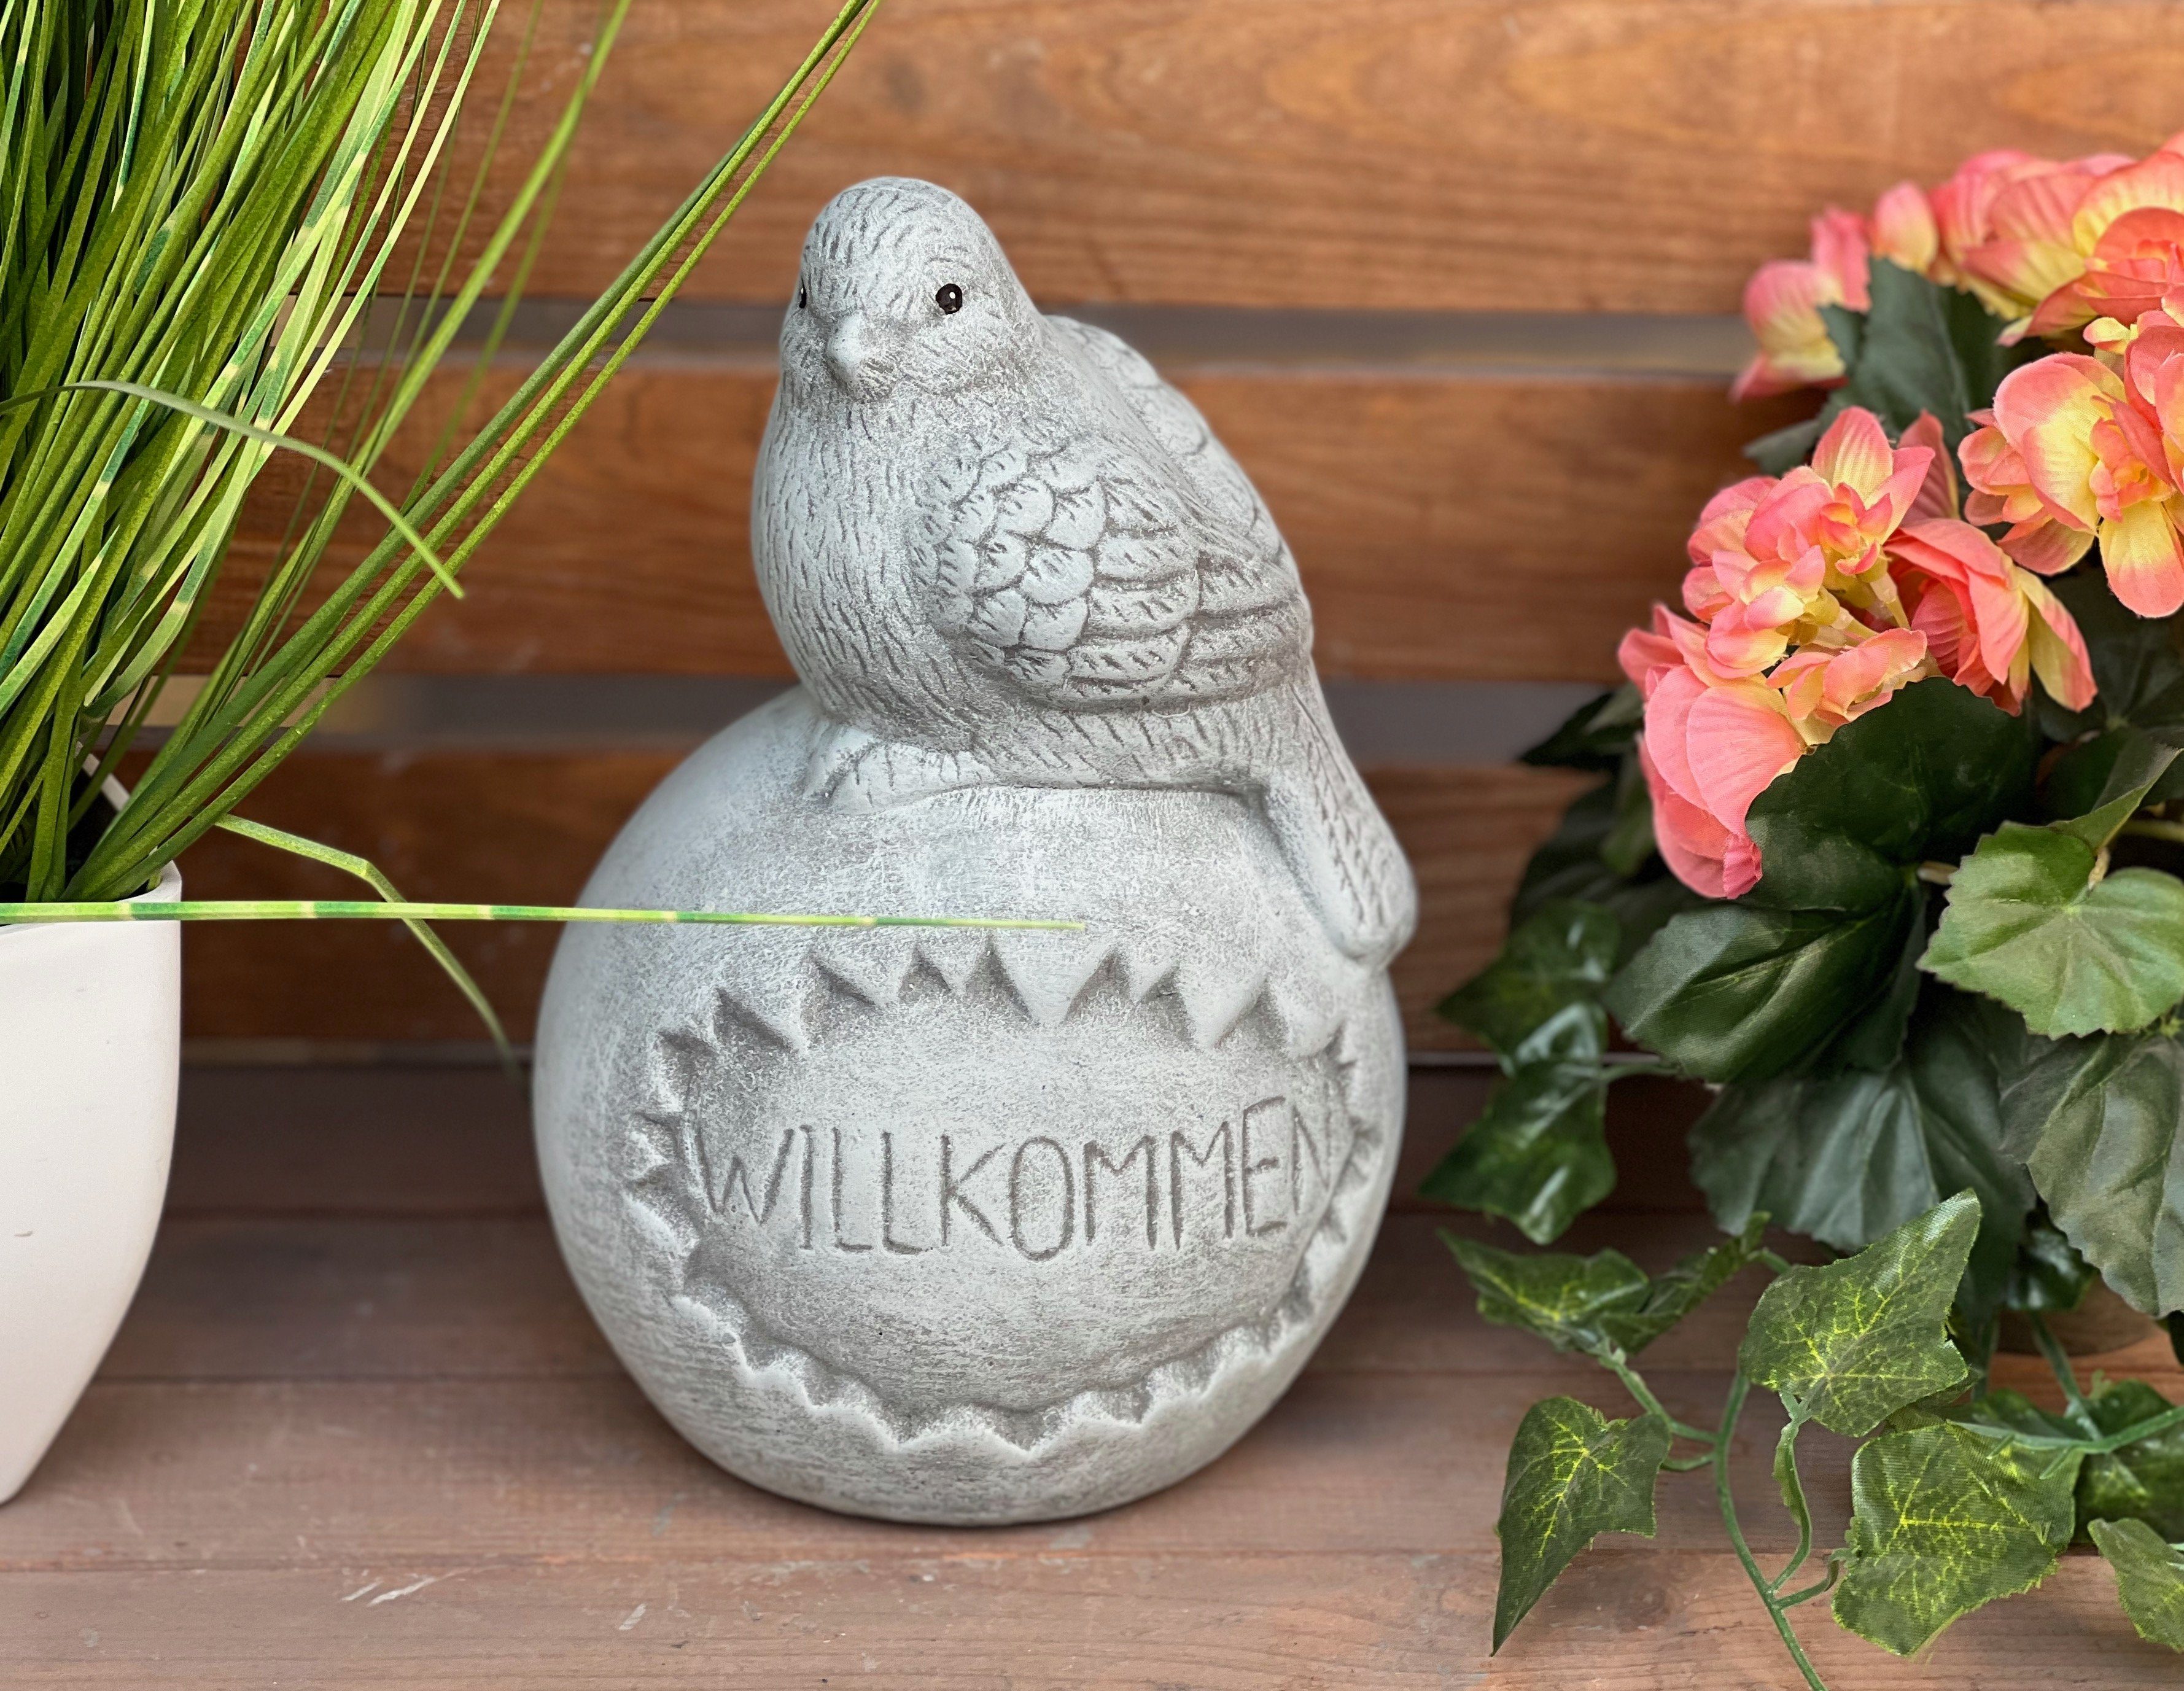 Stone and Style Gartenfigur Steinfigur Kugel auf Steinguss Vogel "Willkommen", frostfest